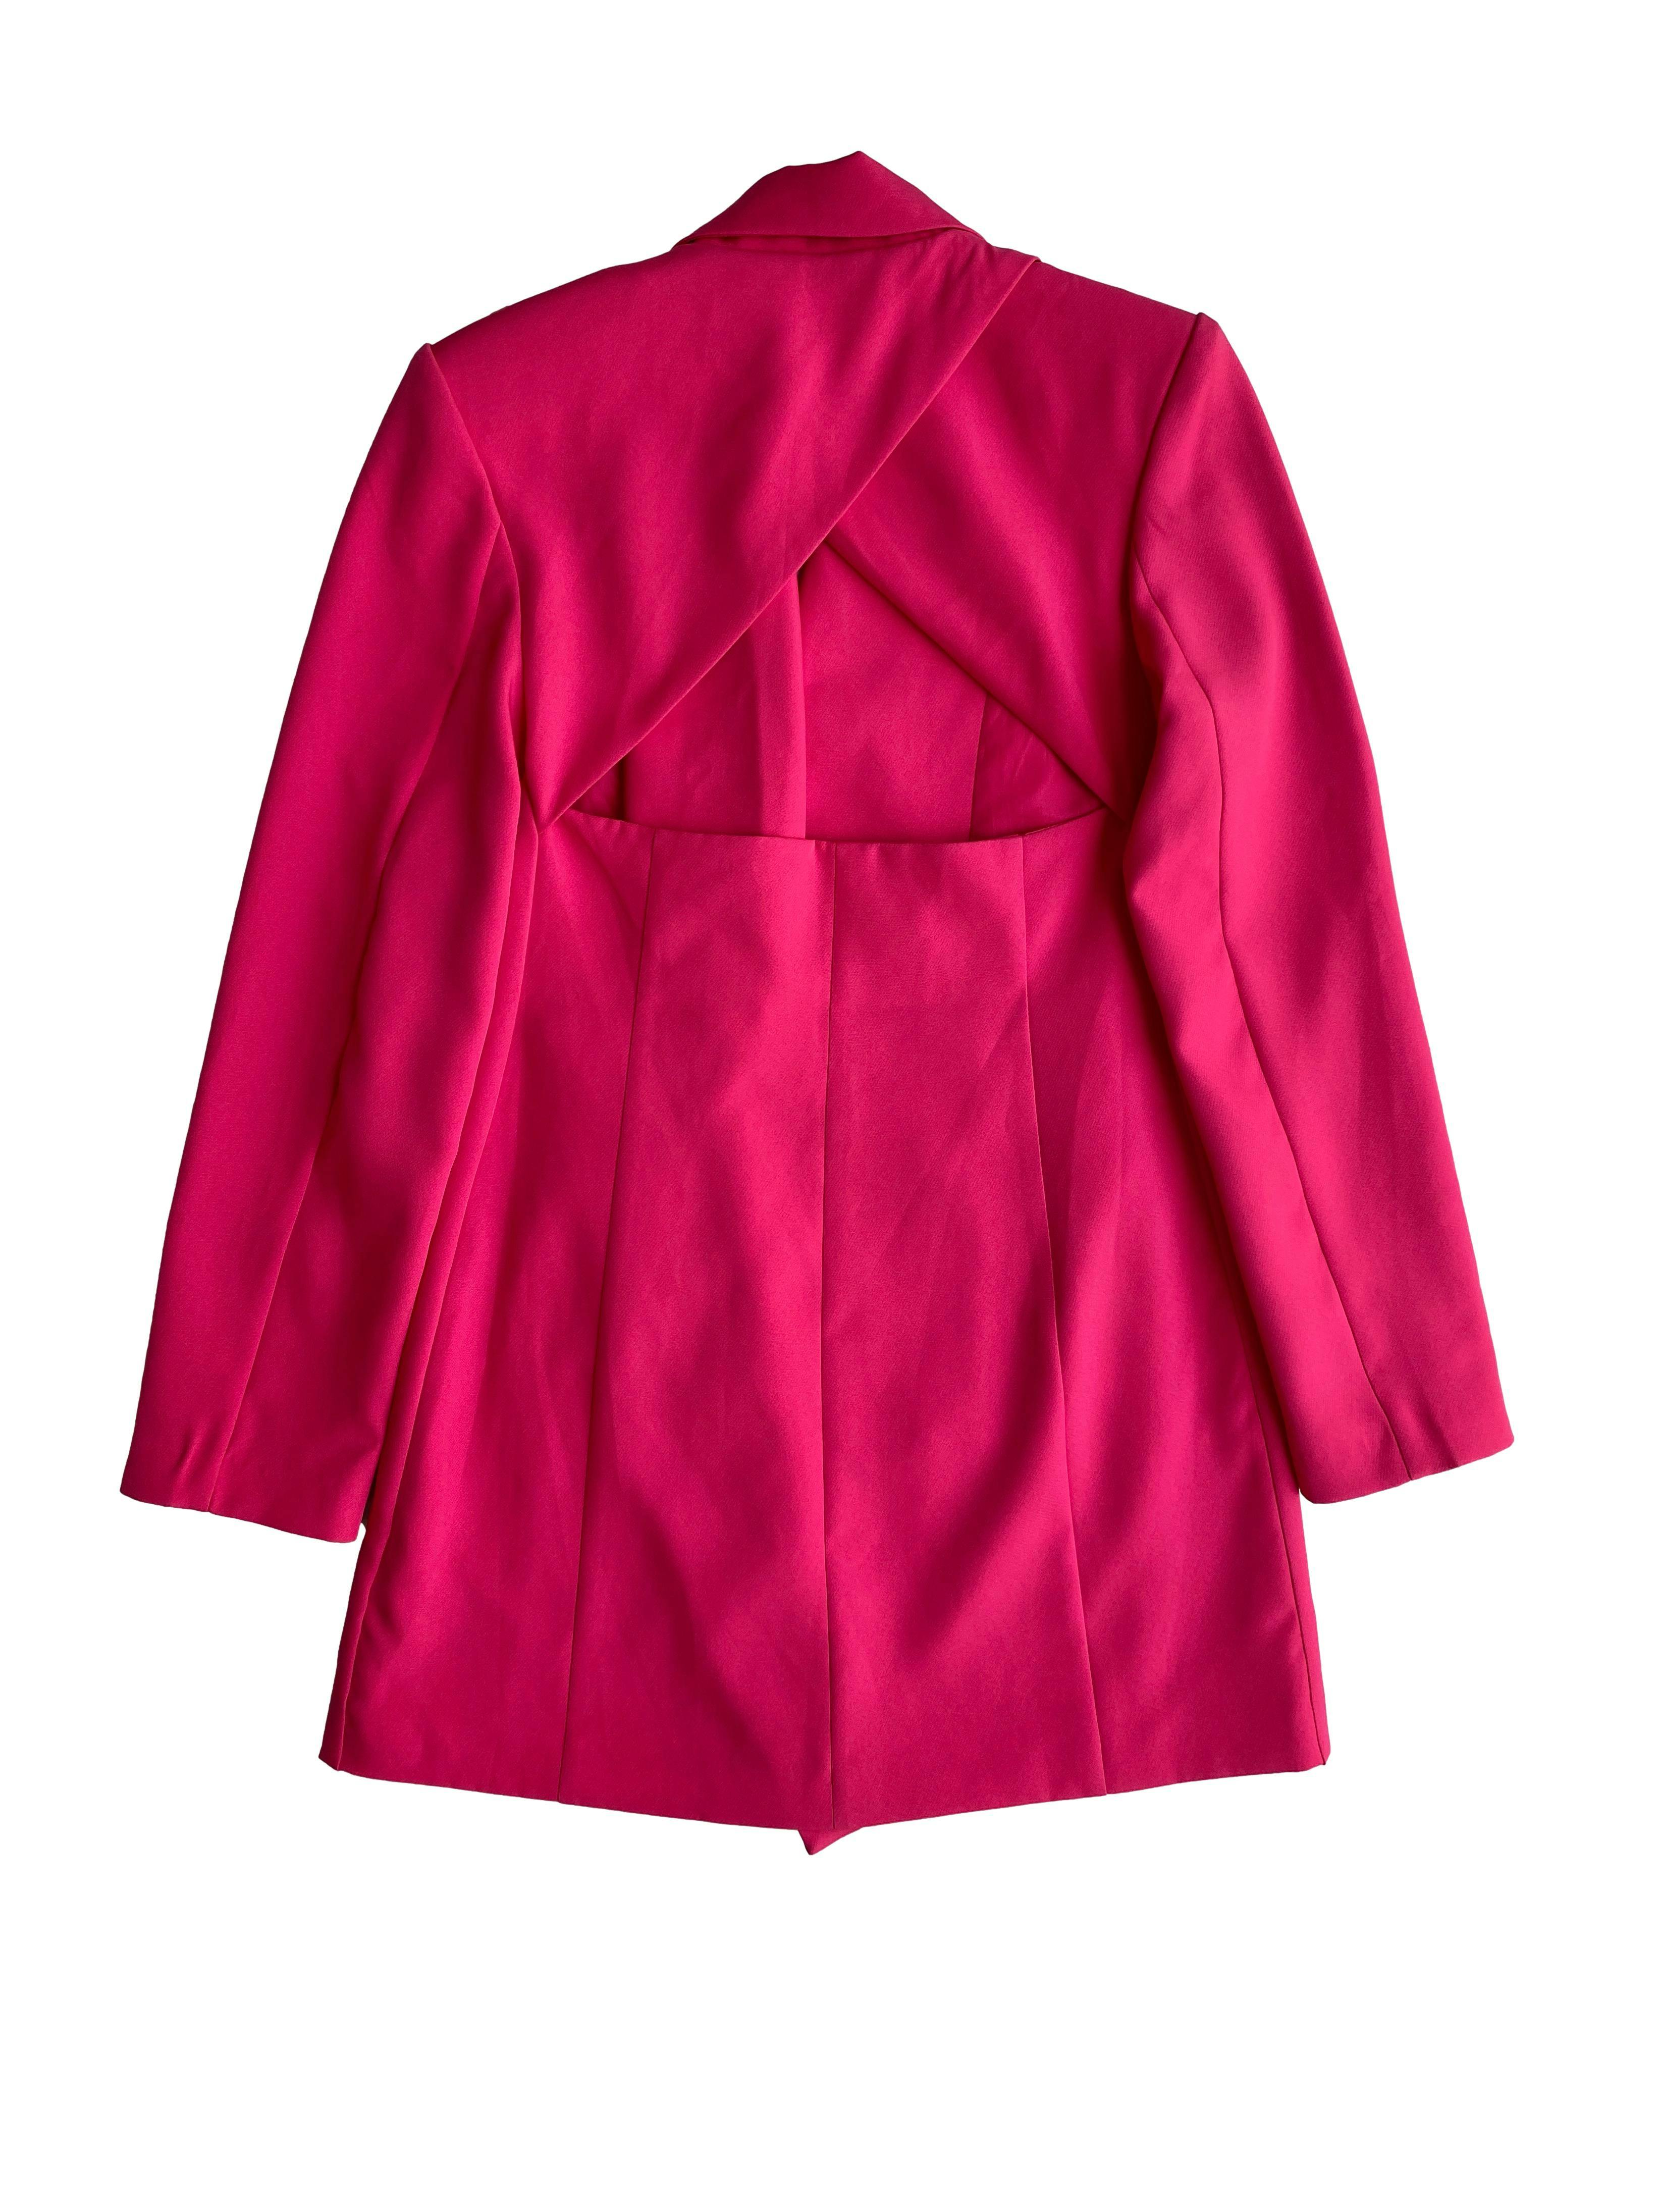 Vestido modelo blazer Steve Madden rosado, apertura en la espalda, bolsillos delanteros, botones rosados delanteros. Busto: 94cm, cintura: 74cm, largo: 88cm. Precio original:  491 soles.